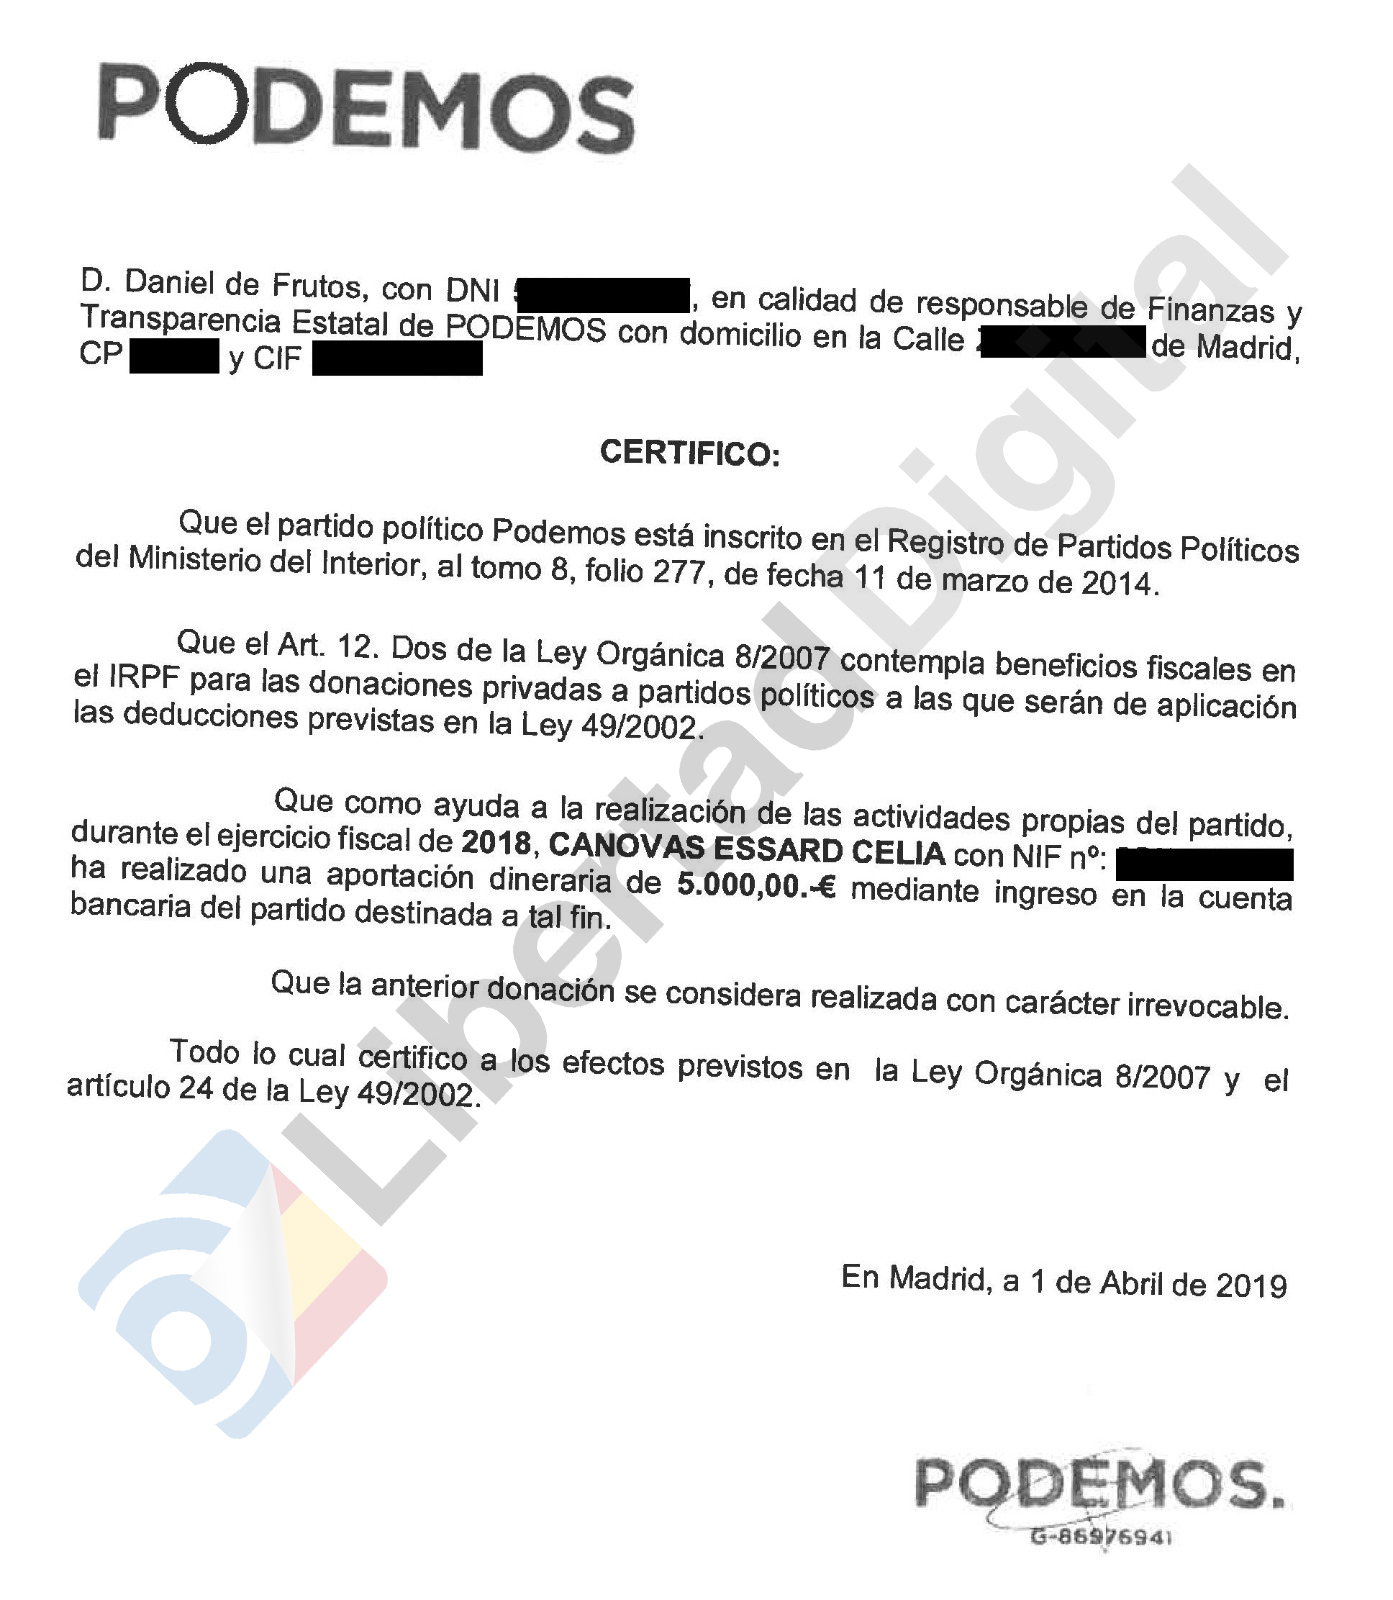 Una de Podemos denuncia partido Pablo Iglesias por blanqueo capitales - Libertad Digital